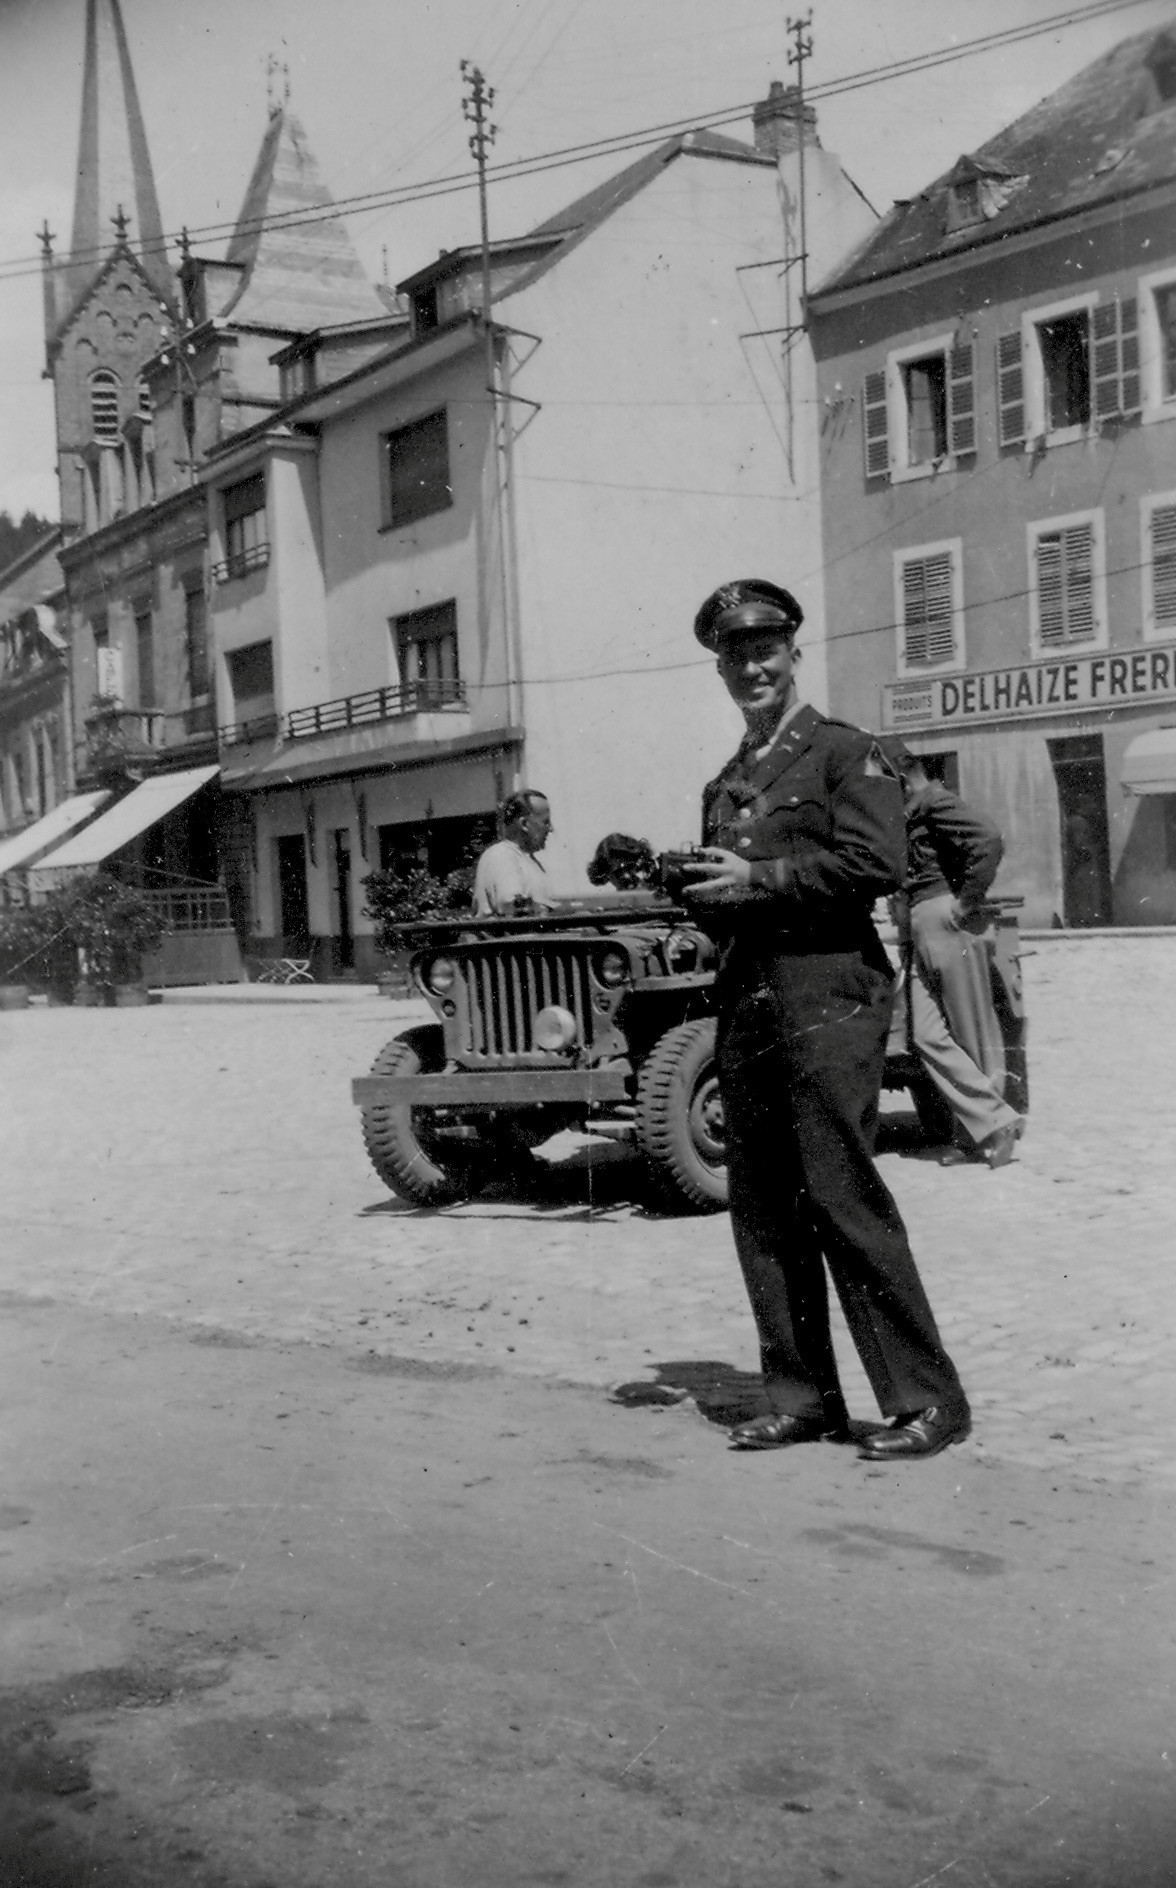 Cette photo datant de 1946 montre un GI américain à Larochette, où se trouve une épicerie de l’enseigne Delhaize. (Photo: Delhaize)